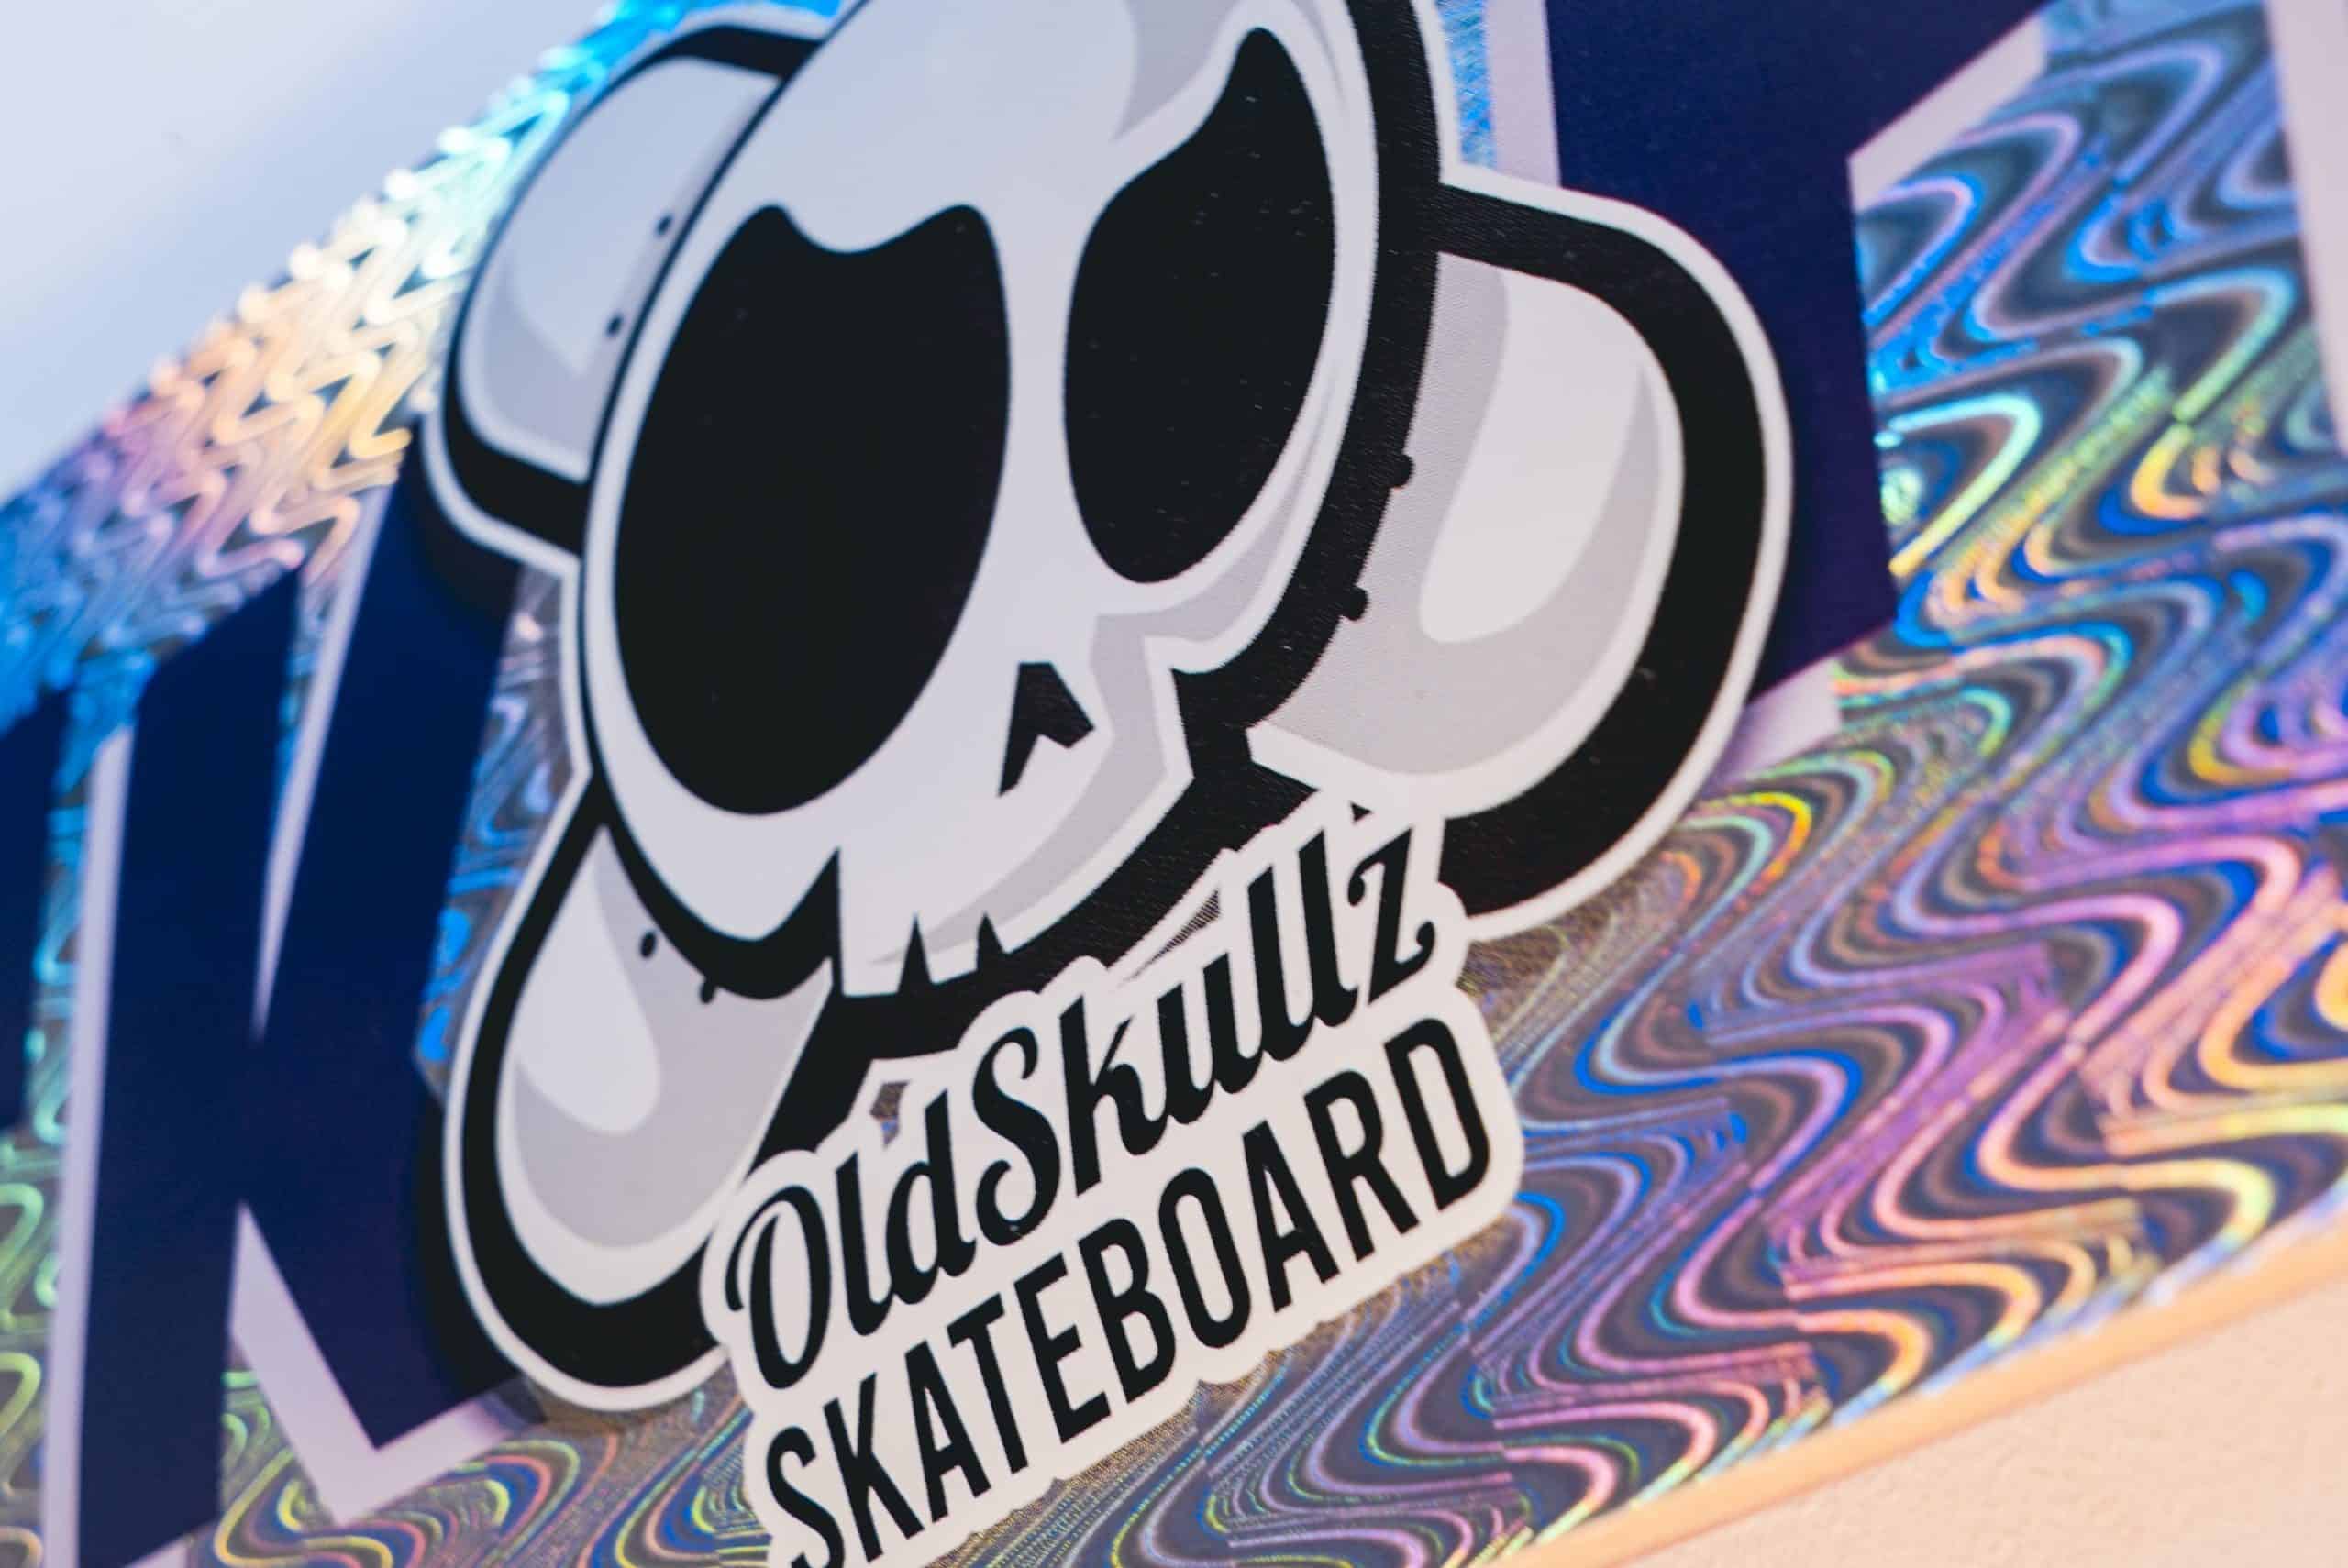 Skateboard brillant old skullz skateboard